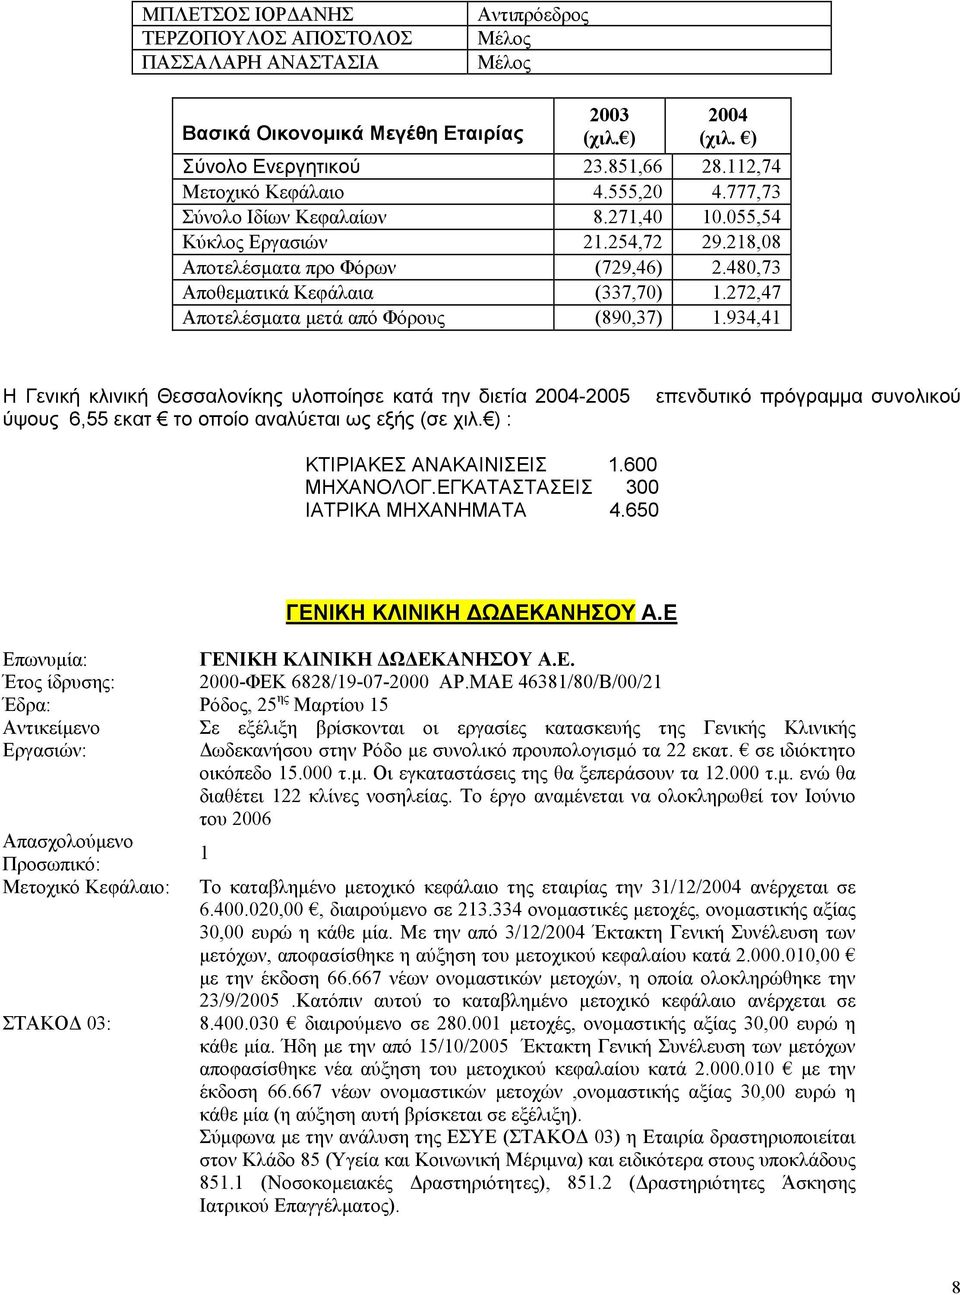 272,47 Αποτελέσµατα µετά από Φόρους (890,37) 1.934,41 Η Γενική κλινική Θεσσαλονίκης υλοποίησε κατά την διετία 2004-2005 ύψους 6,55 εκατ το οποίο αναλύεται ως εξής (σε χιλ.